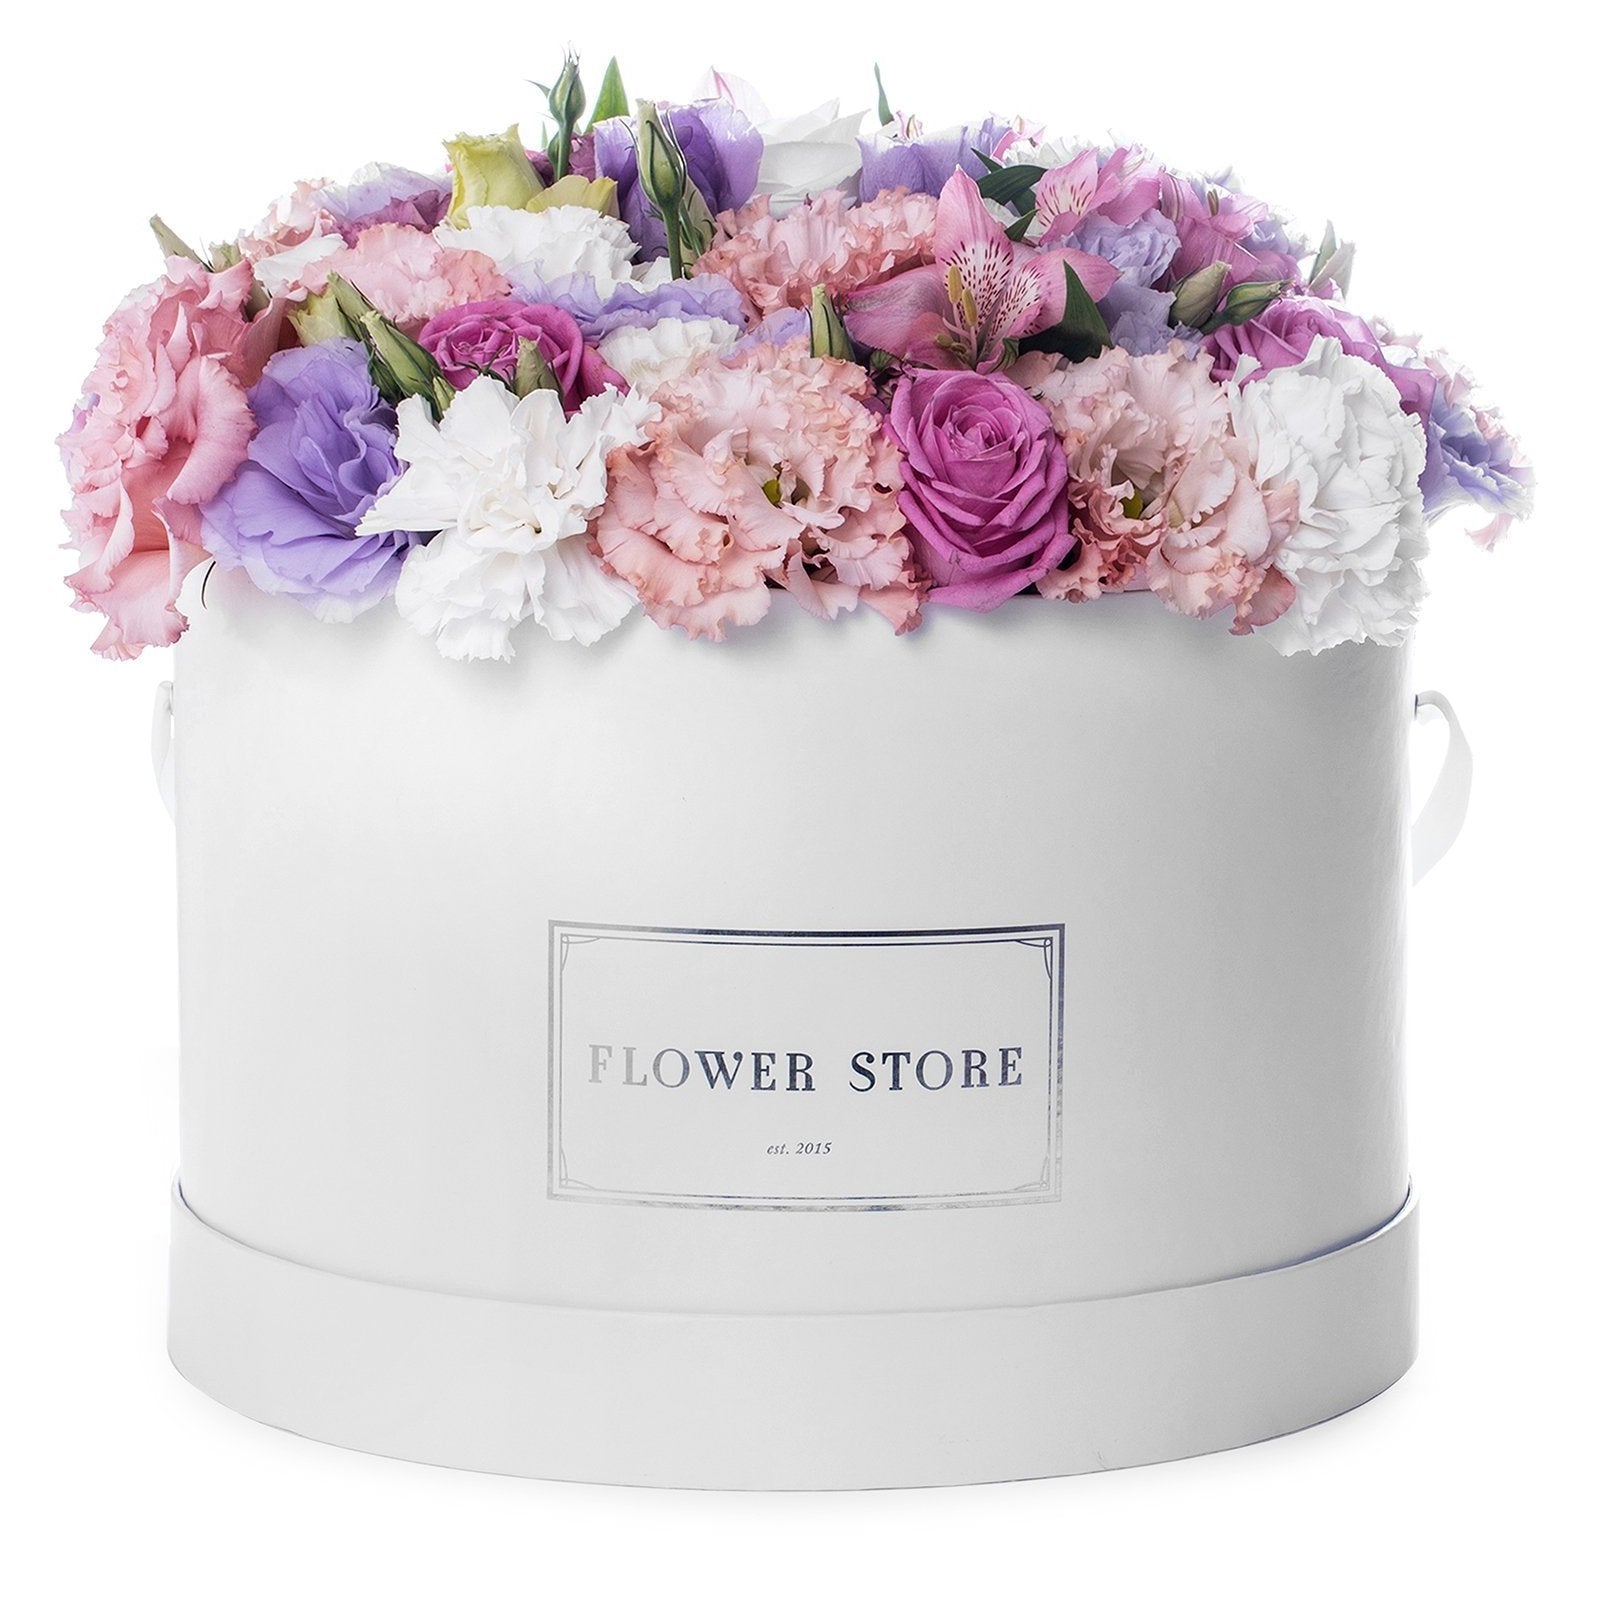 Biały grande box wiosenna kompozycja - kwiaty żywe